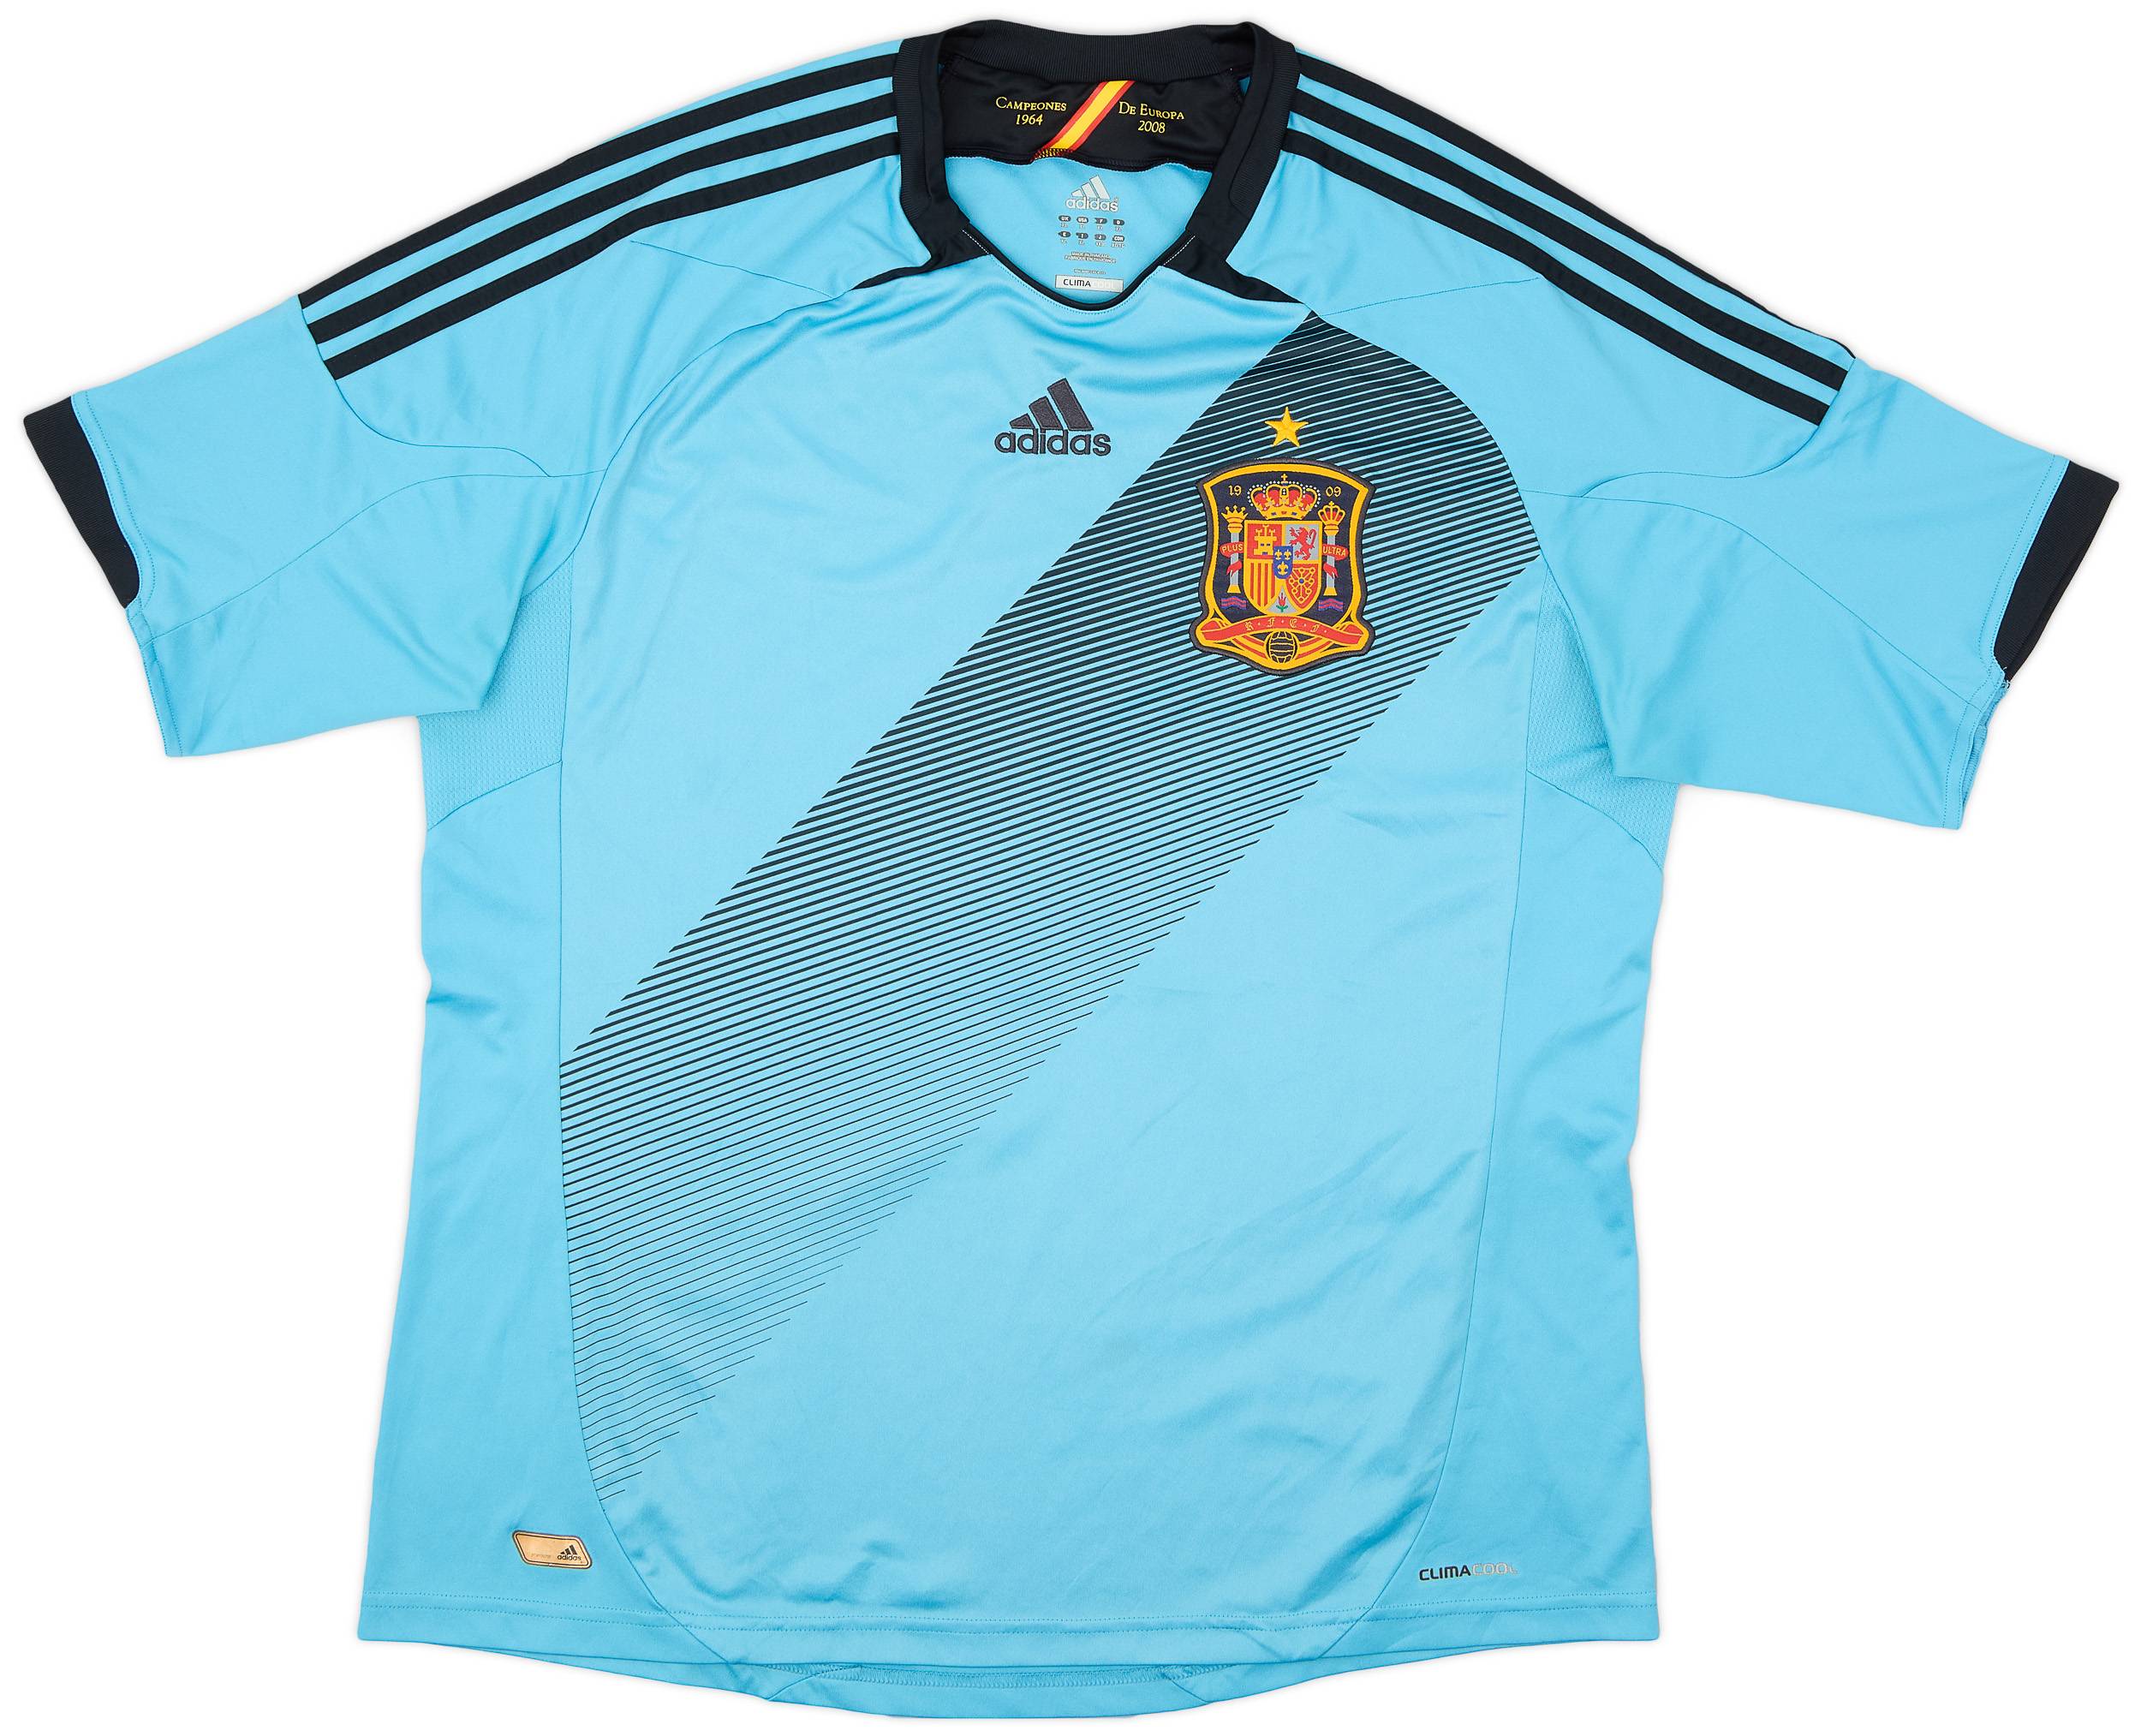 2012-14 Spain Away Shirt - 7/10 - (XL)